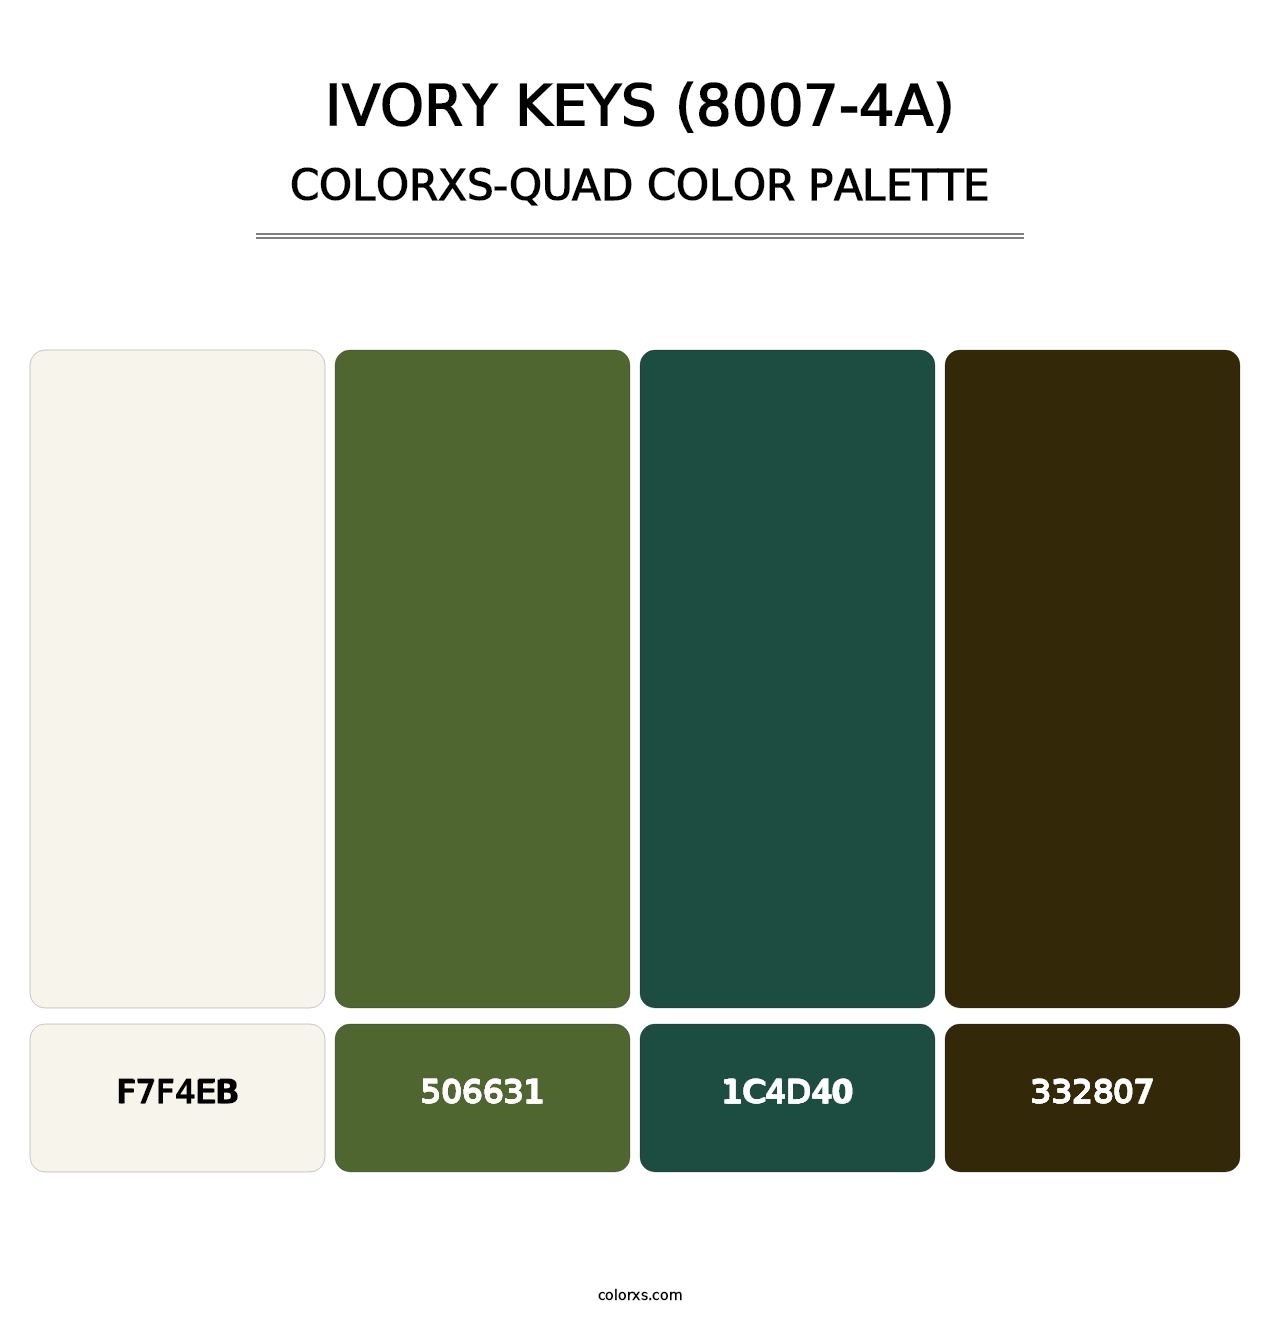 Ivory Keys (8007-4A) - Colorxs Quad Palette